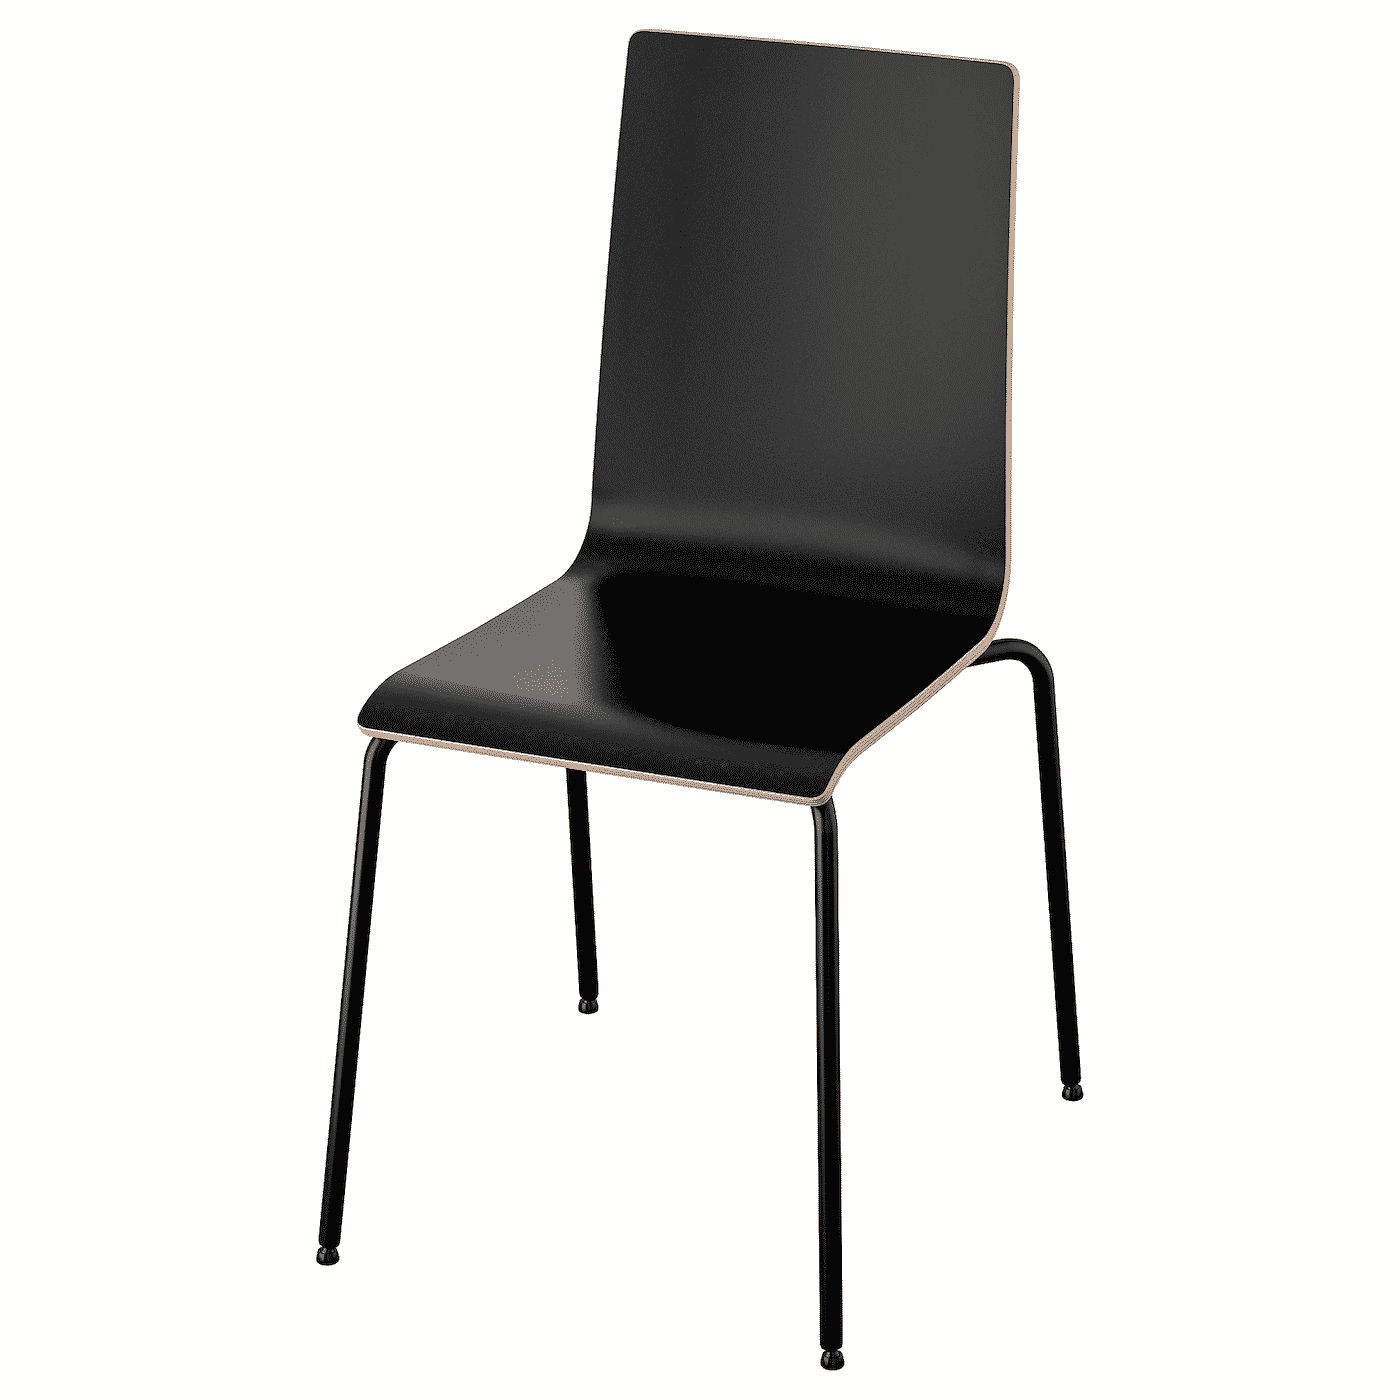 MARTIN Chair